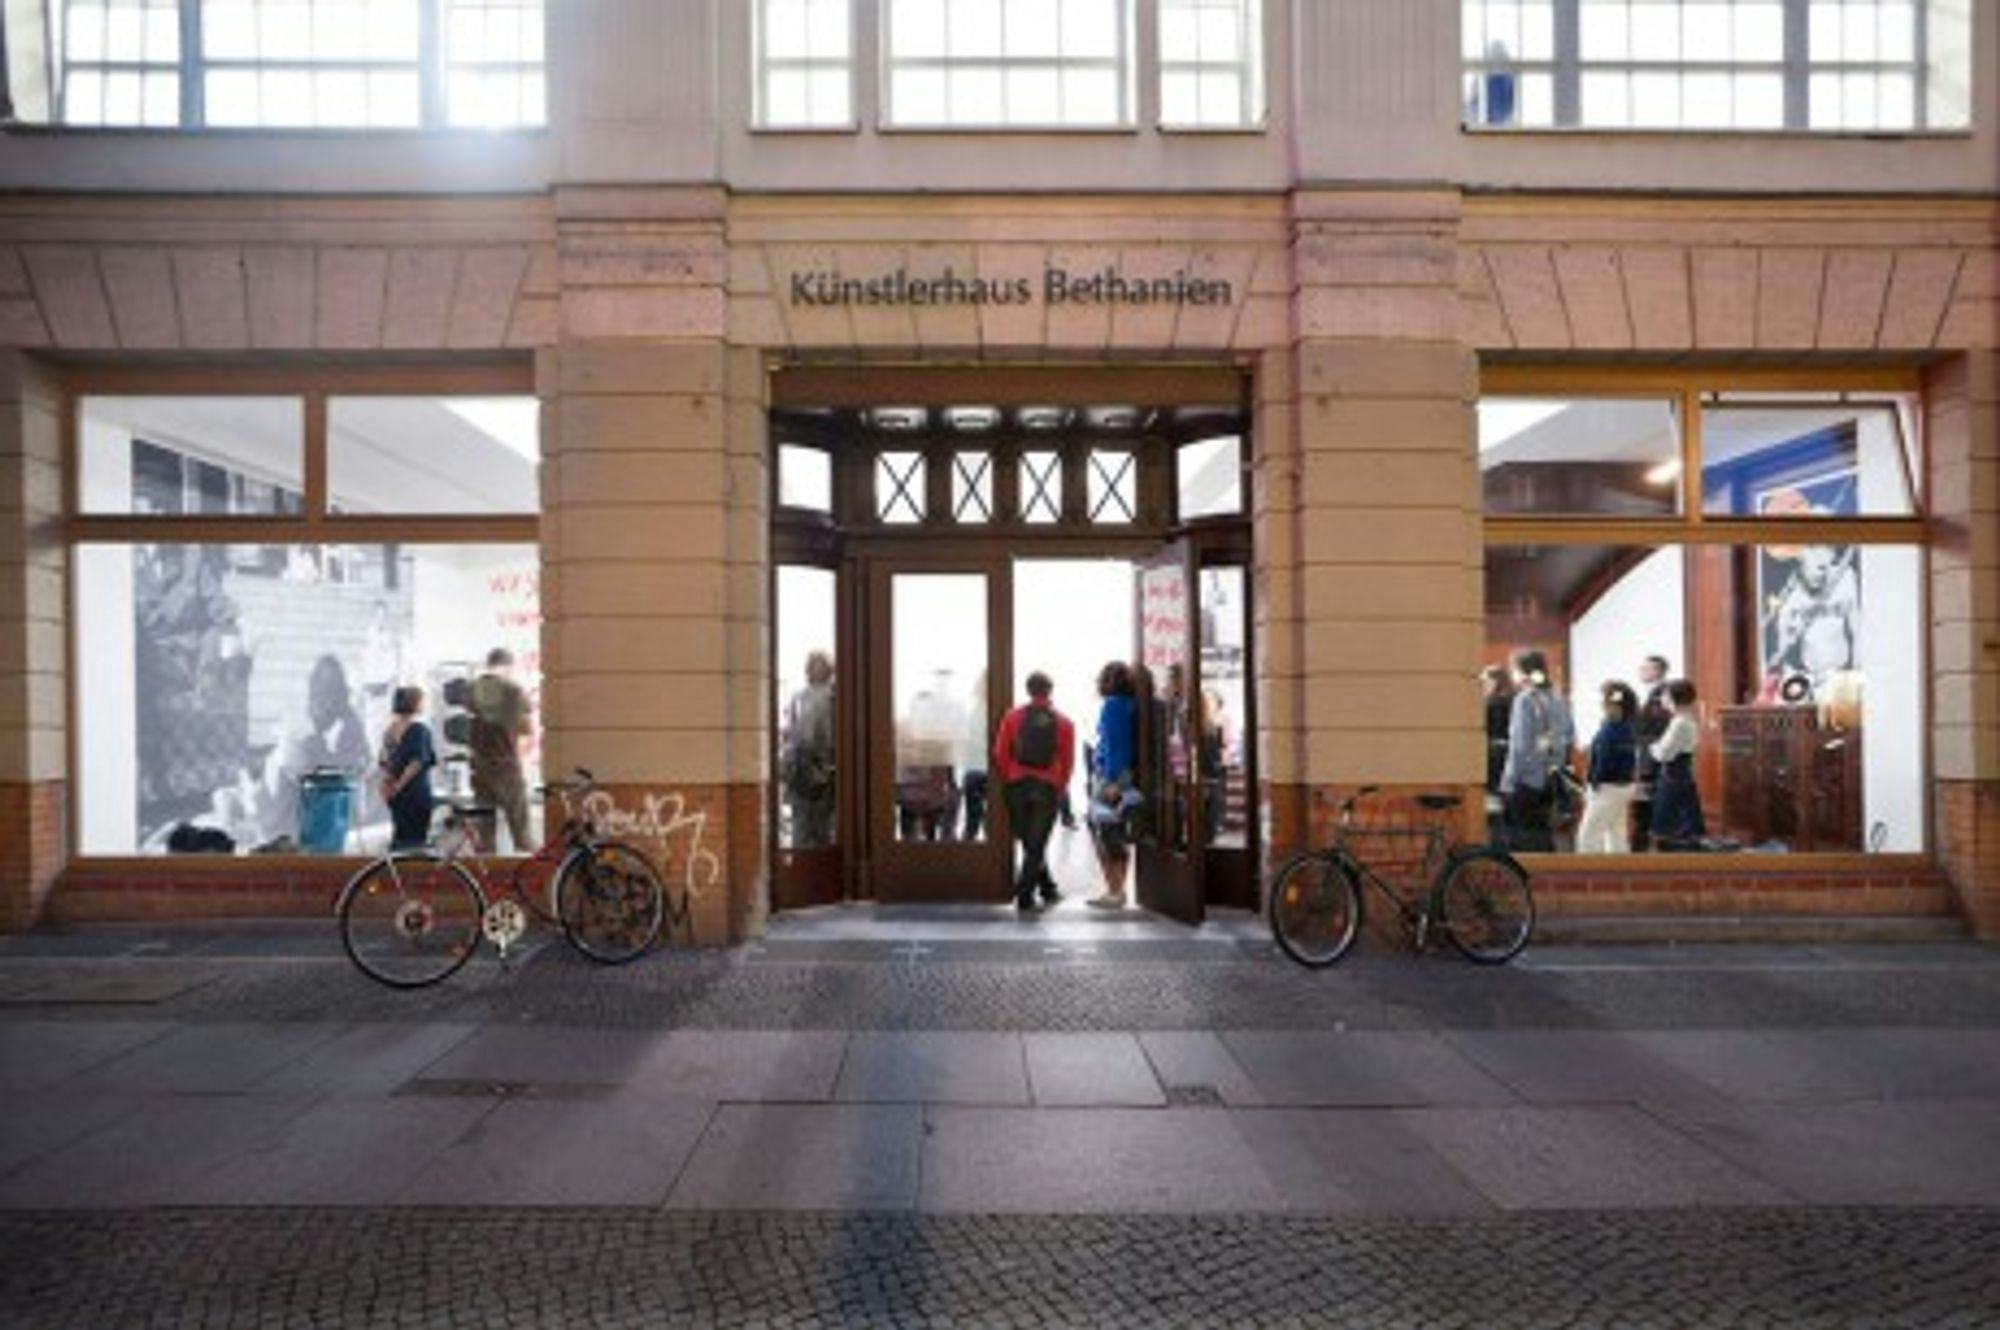 Kunstlerhaus Bethanien front